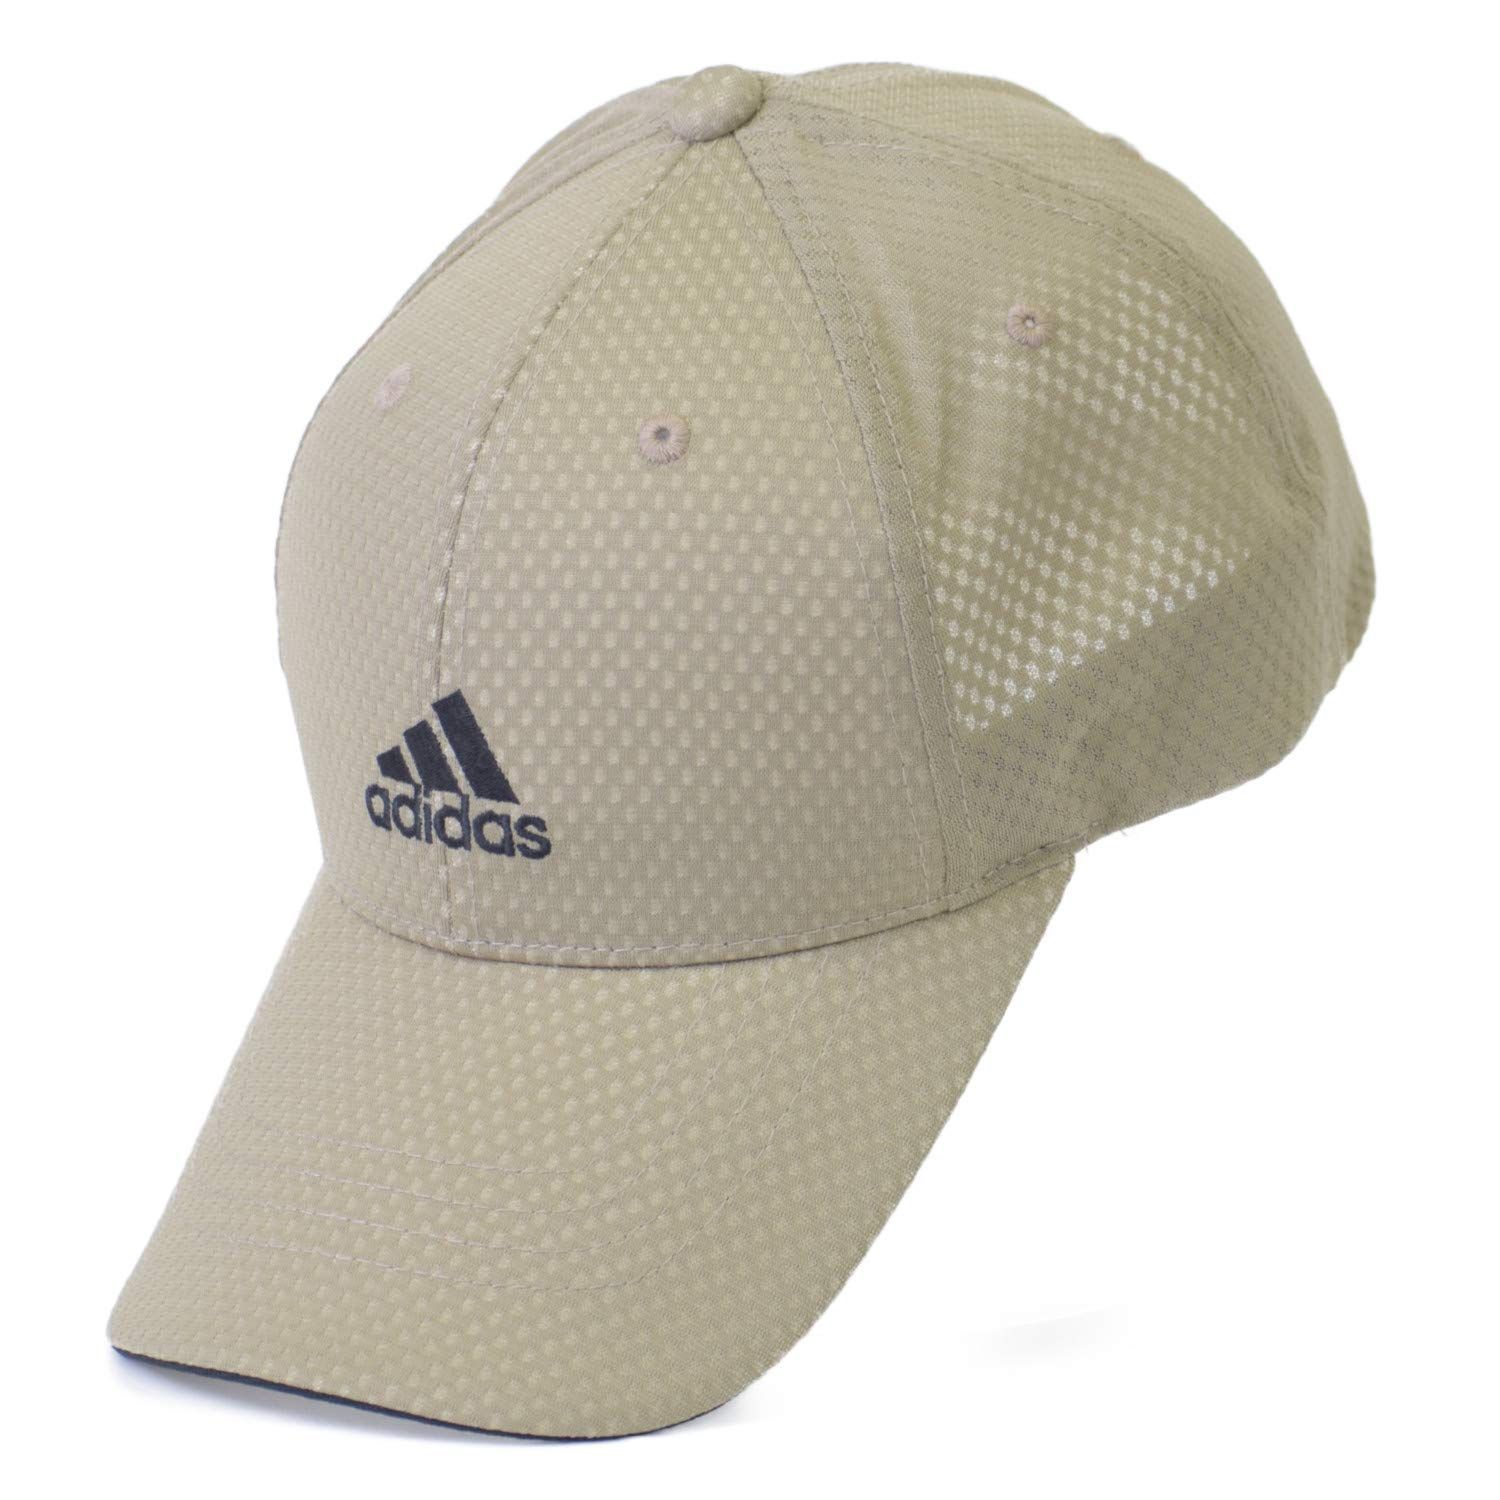 アディダスadidas 機能素材 ライトメッシュキャップ 帽子 キャップ メンズ レディース ゴルフ メッシュキャップ スポーツ アスリート 508 